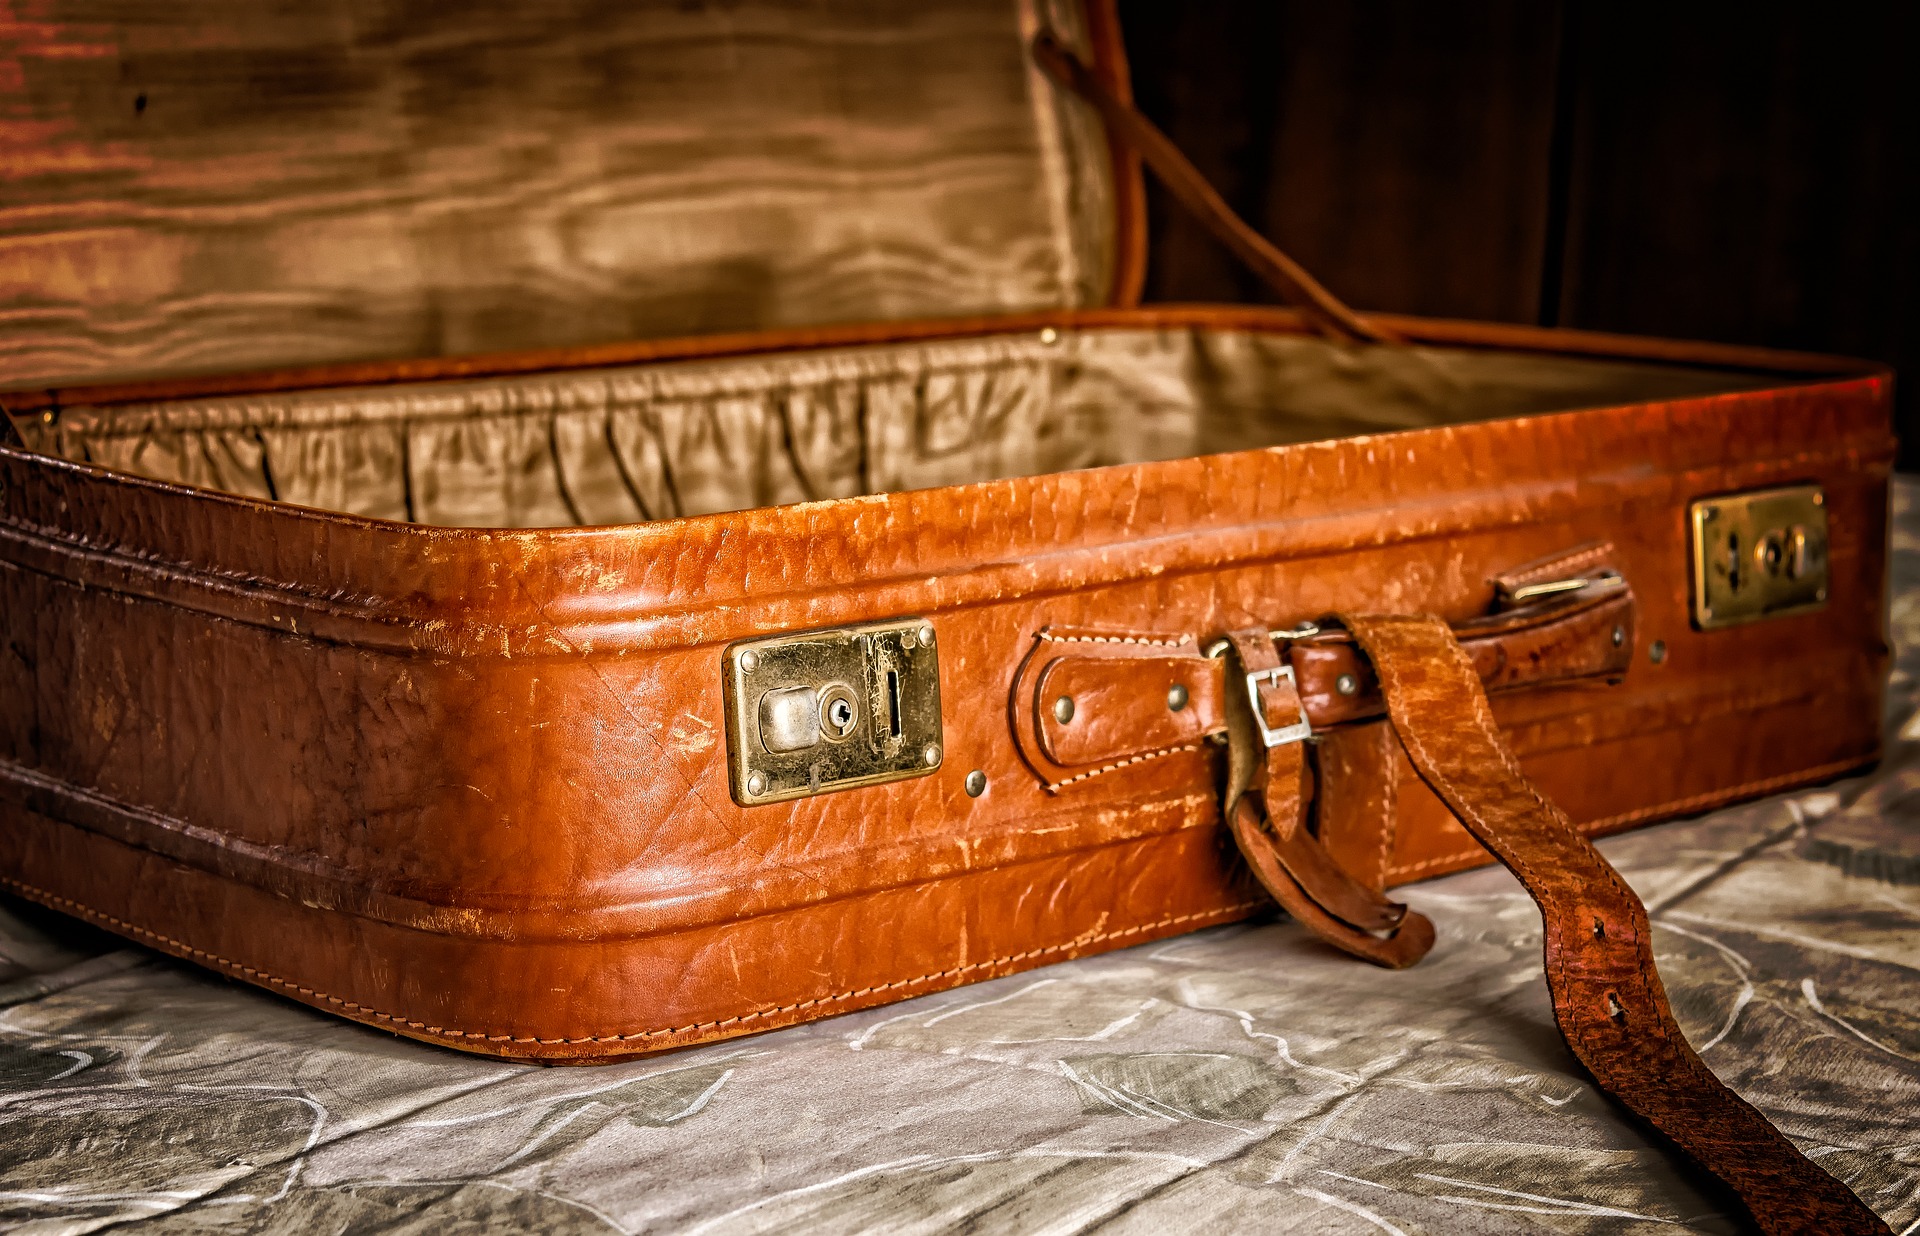 suitcase-gaf530044a_1920_pixabay.jpg